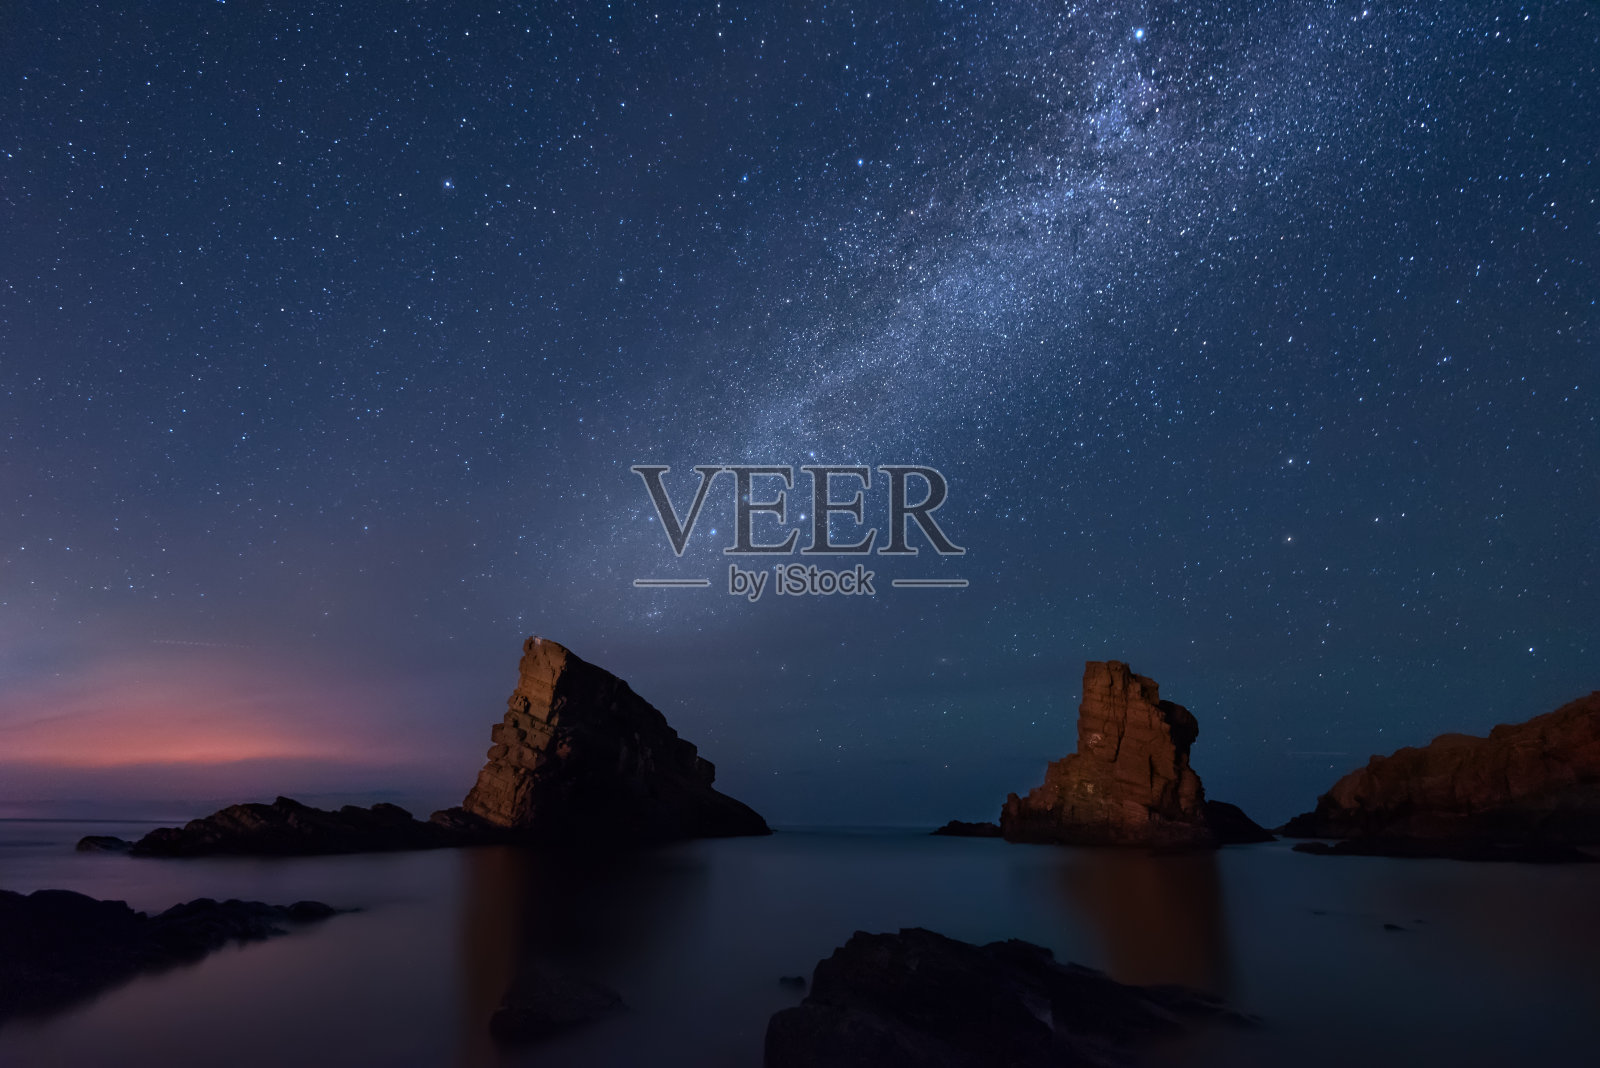 银河之海，西尼莫雷特，保加利亚照片摄影图片